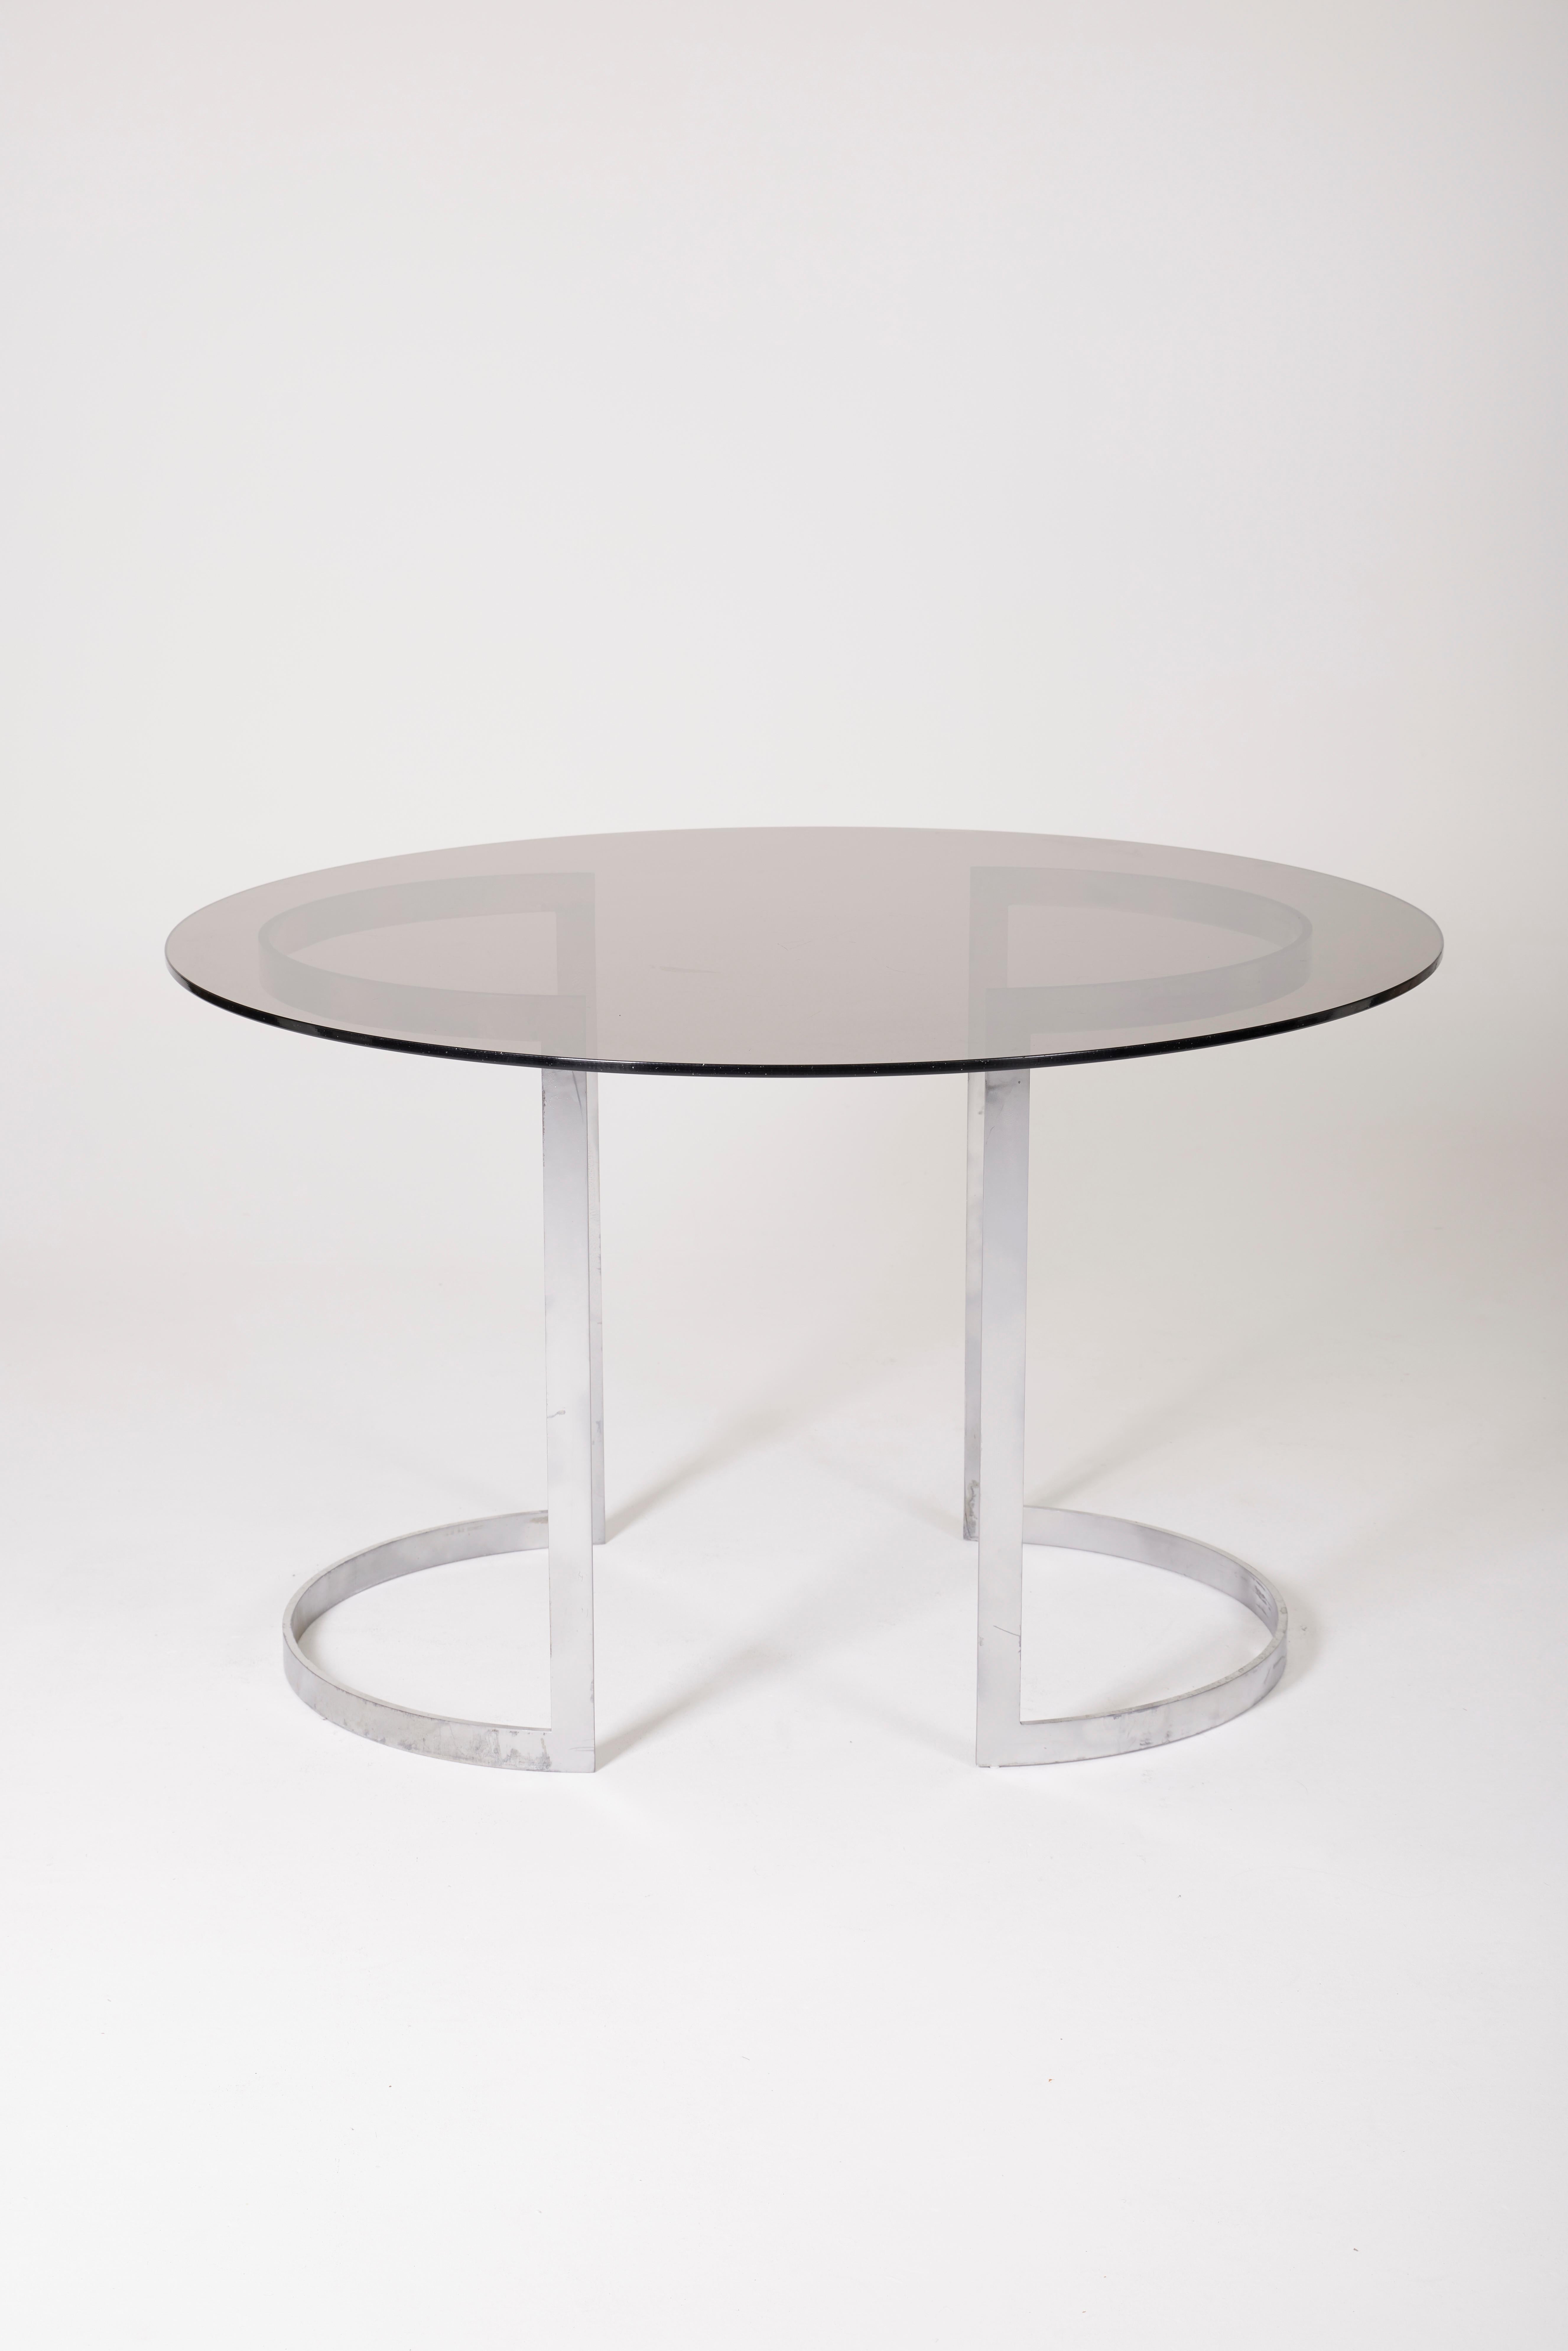 Esstisch des Designers Boris Tabacoff (1927-1985), 1970er Jahre. Die Platte ist aus geräuchertem Glas in runder Form gefertigt. Er steht auf einem doppelt gebogenen, verchromten Metallsockel. Guter Zustand.
LP1621